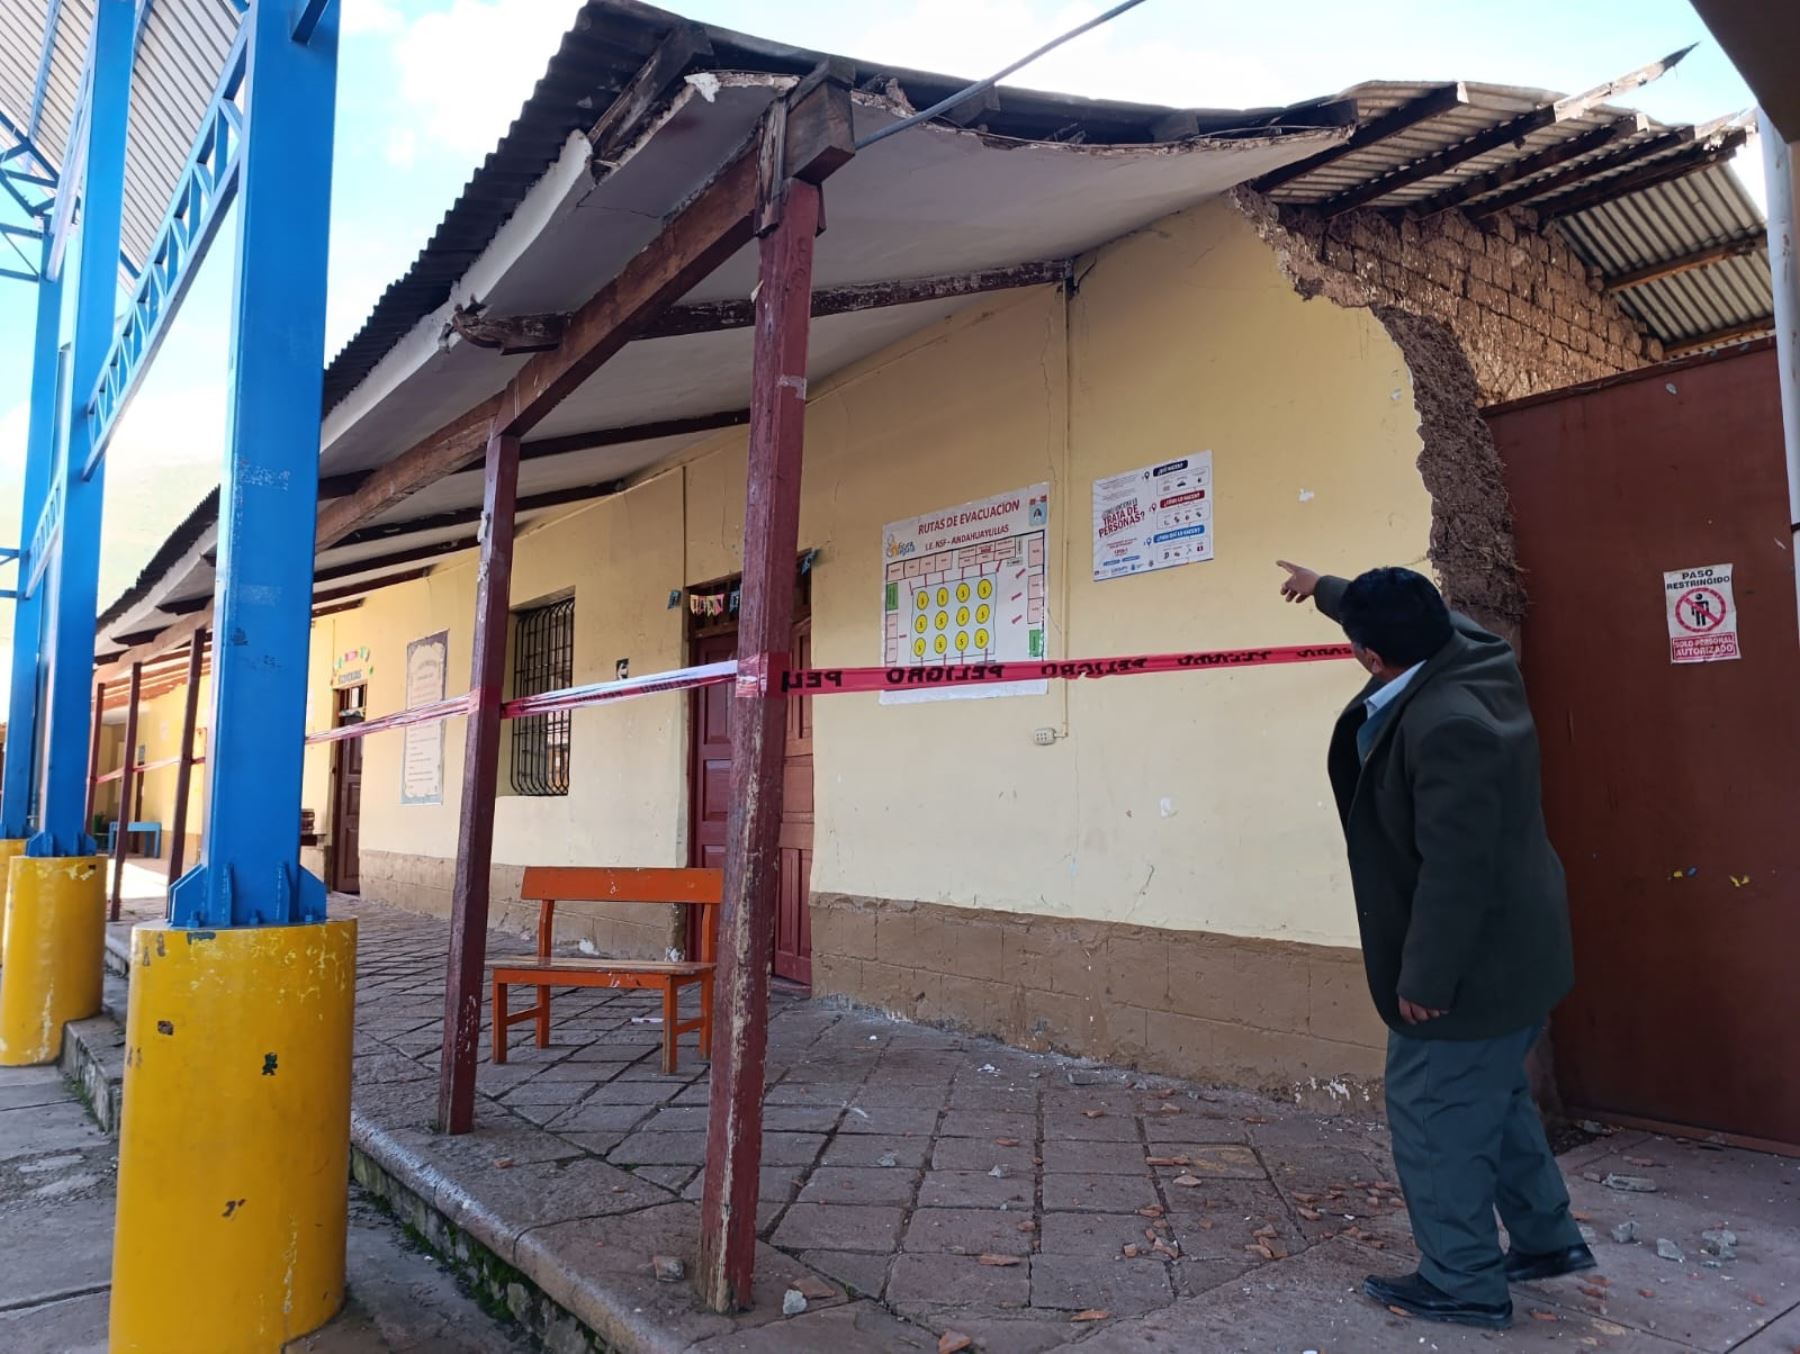 La comunidad educativa de Andahuaylillas solicitó a las autoridades que se declare inhabitable al colegio Nuestra Señora de Fátima debido a los daños severos causados por los continuos sismos que se registran en ese distrito ubicado en la provincia de Quispicanchi, región Cusco. ANDINA/Percy Hurtado Santillán